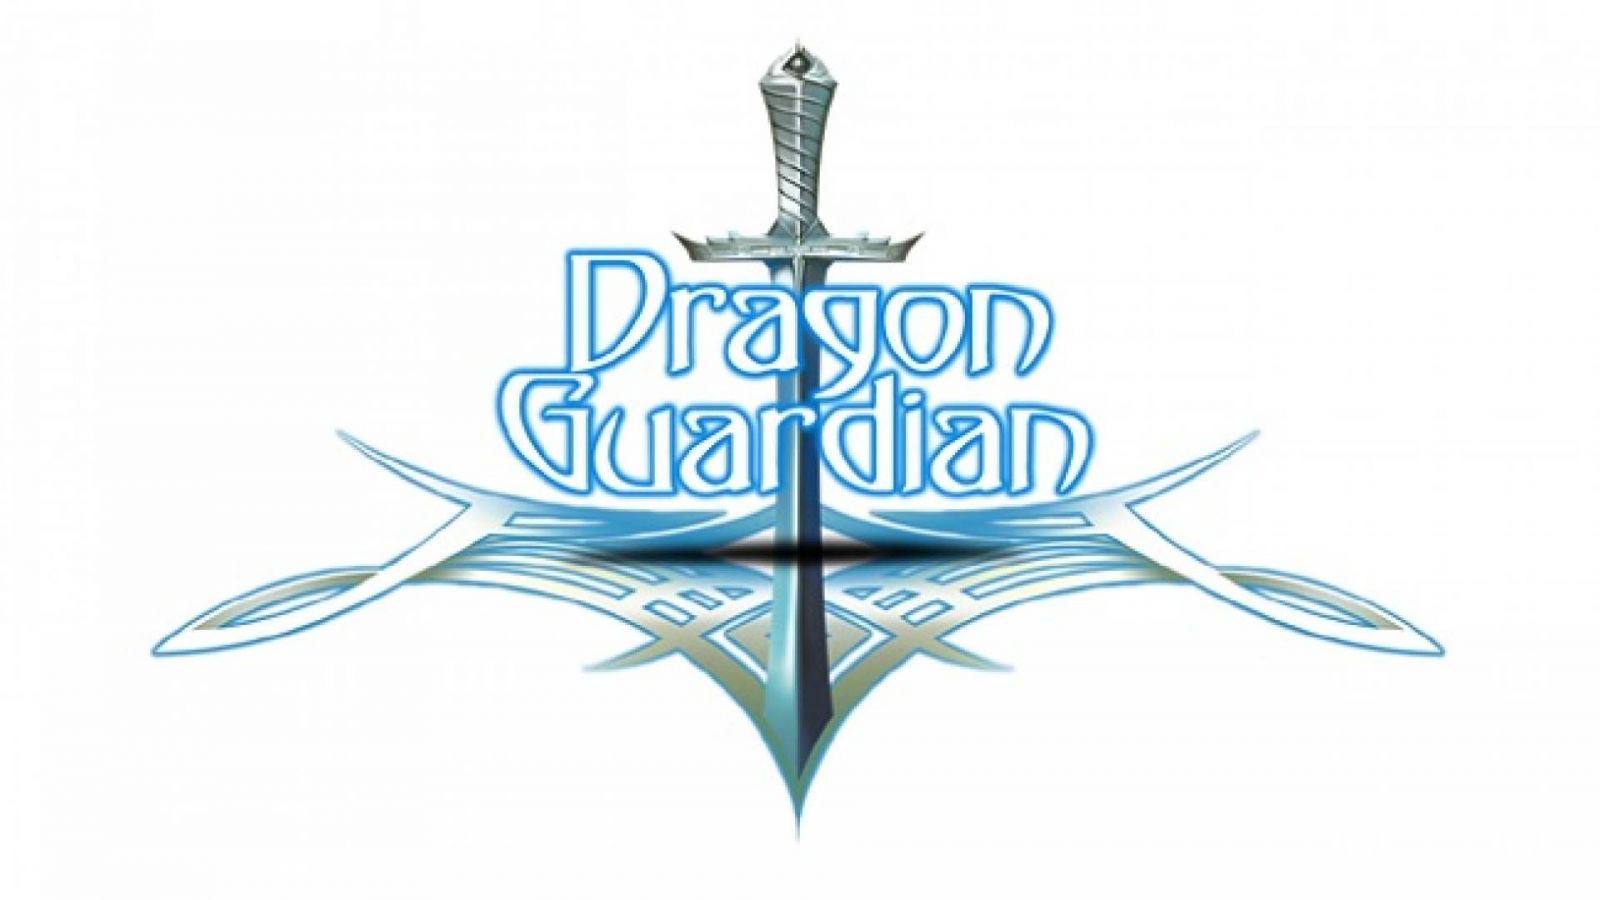 Dragon Guardian julkaisee 15-minuuttisen singlekappaleen © Dragon Guardian